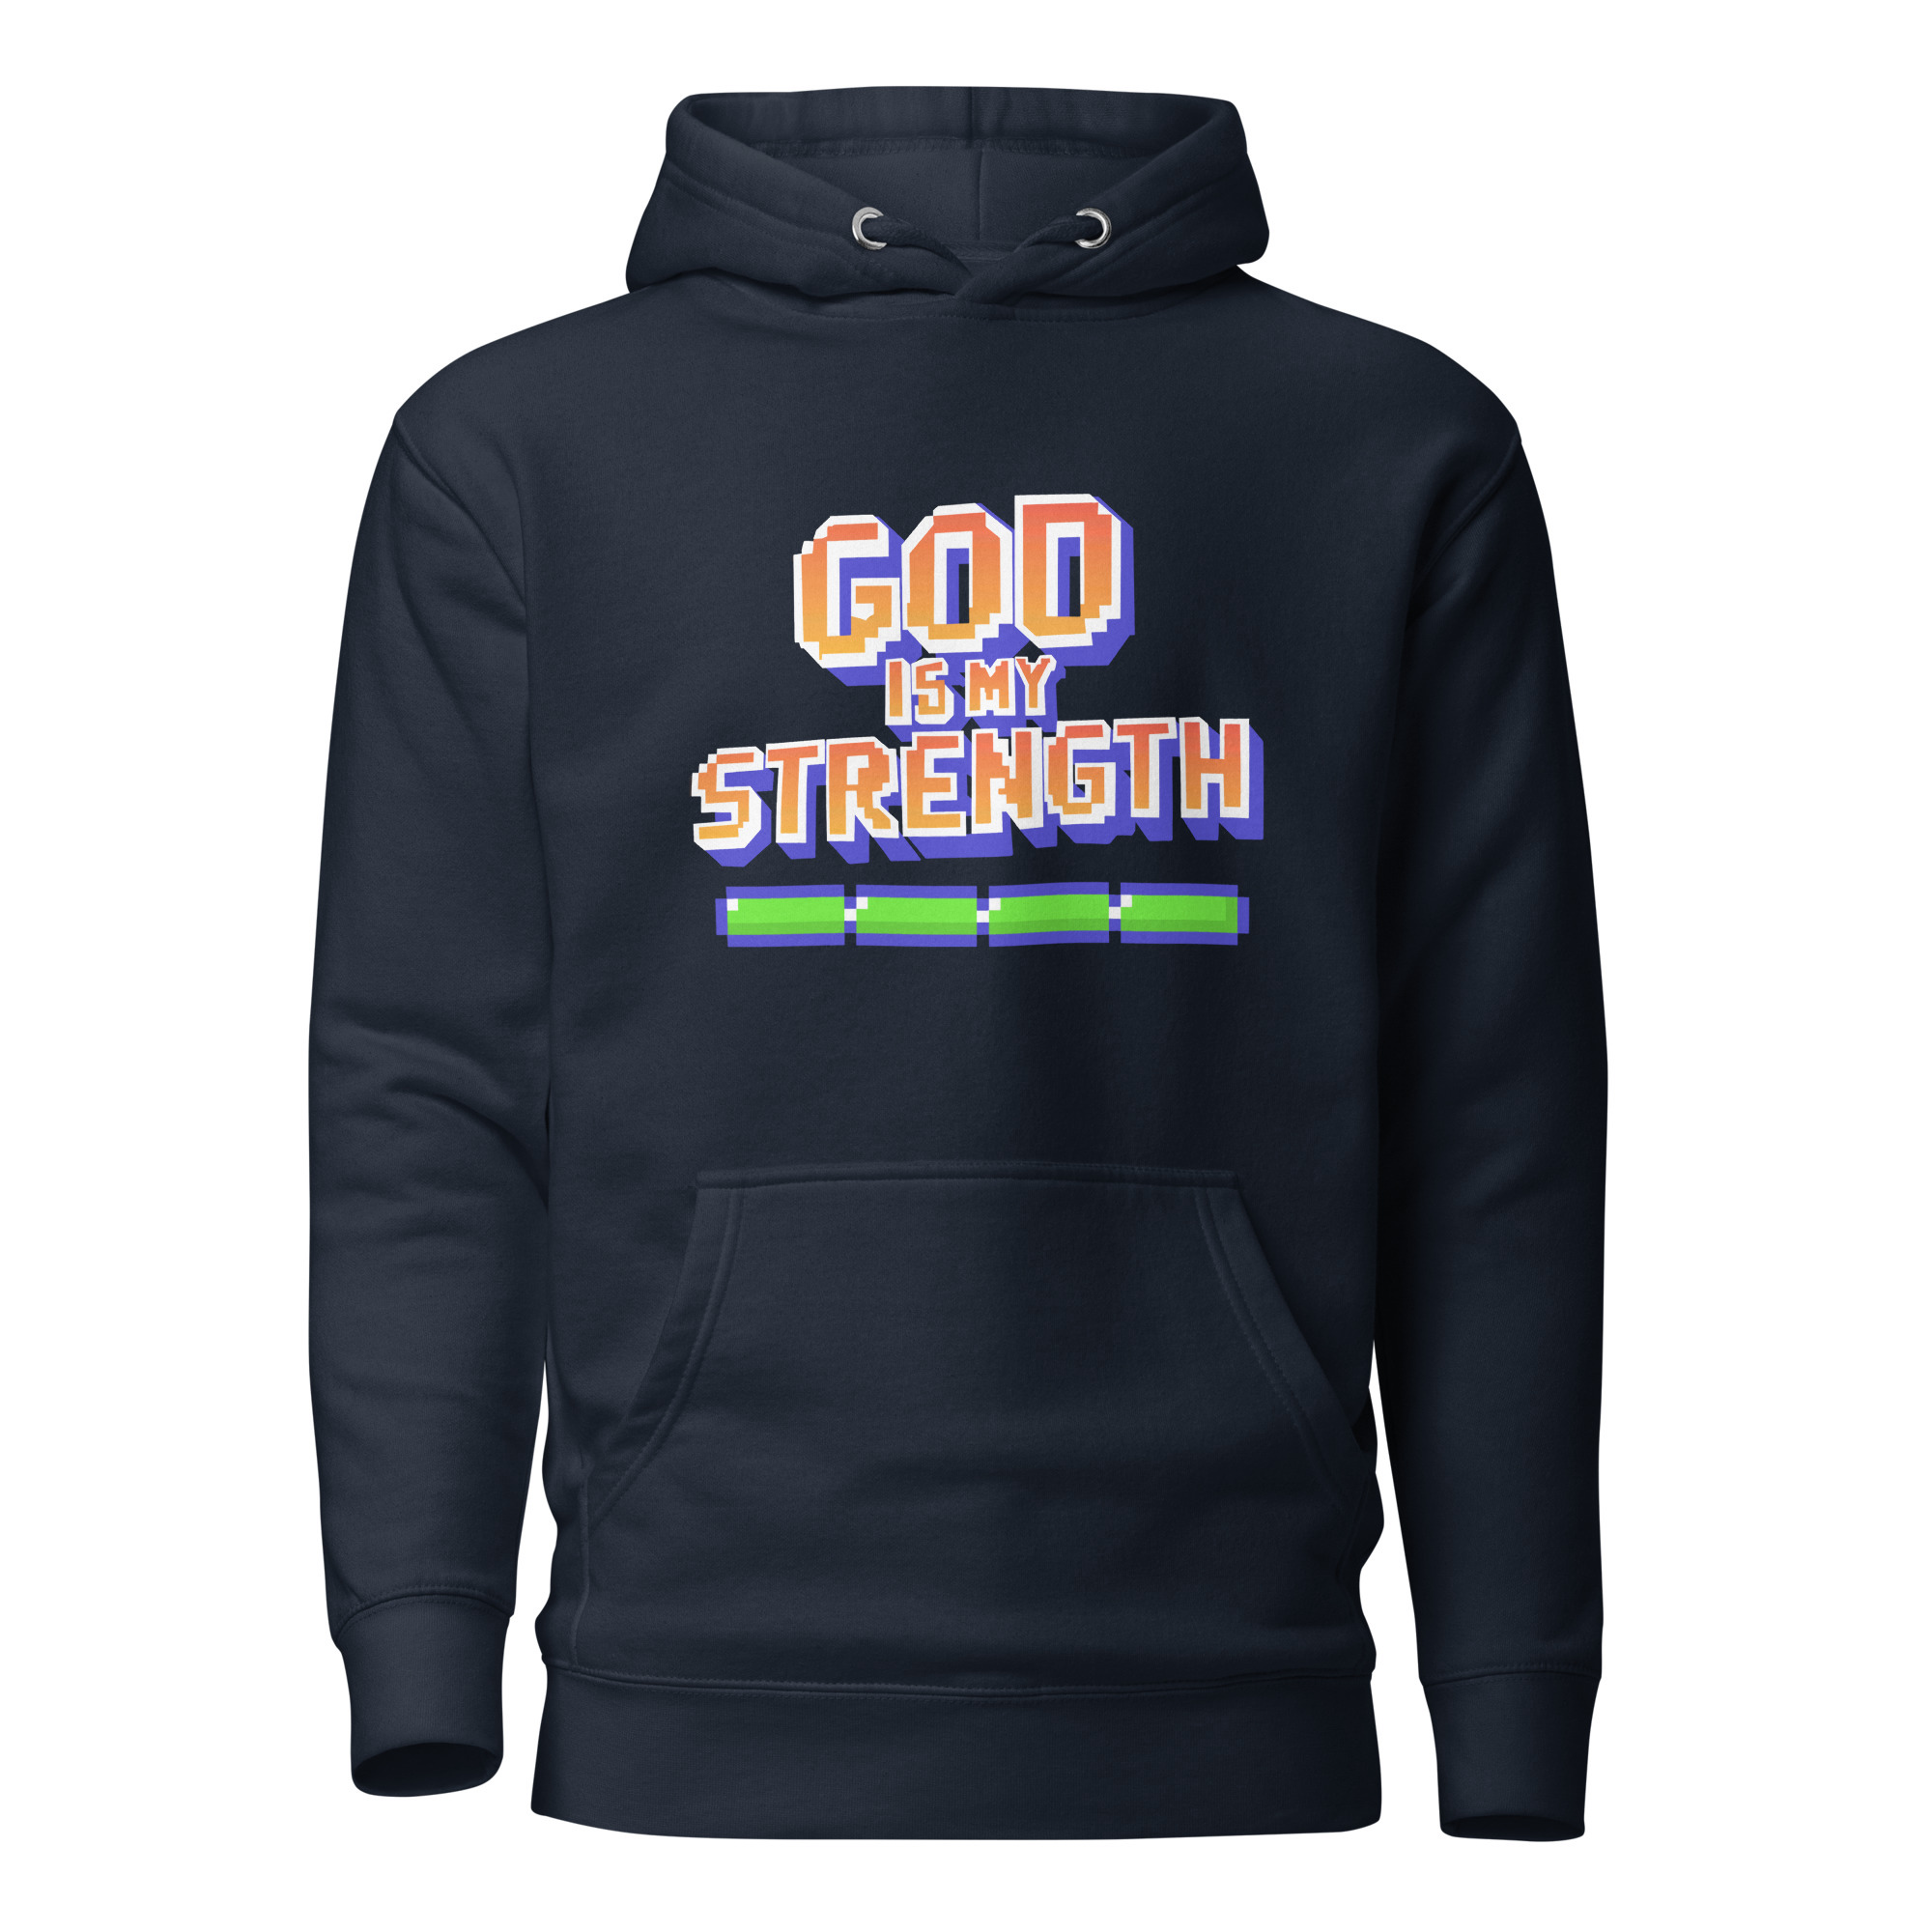 God is my Strength Hoodie - Navy Blazer / XL